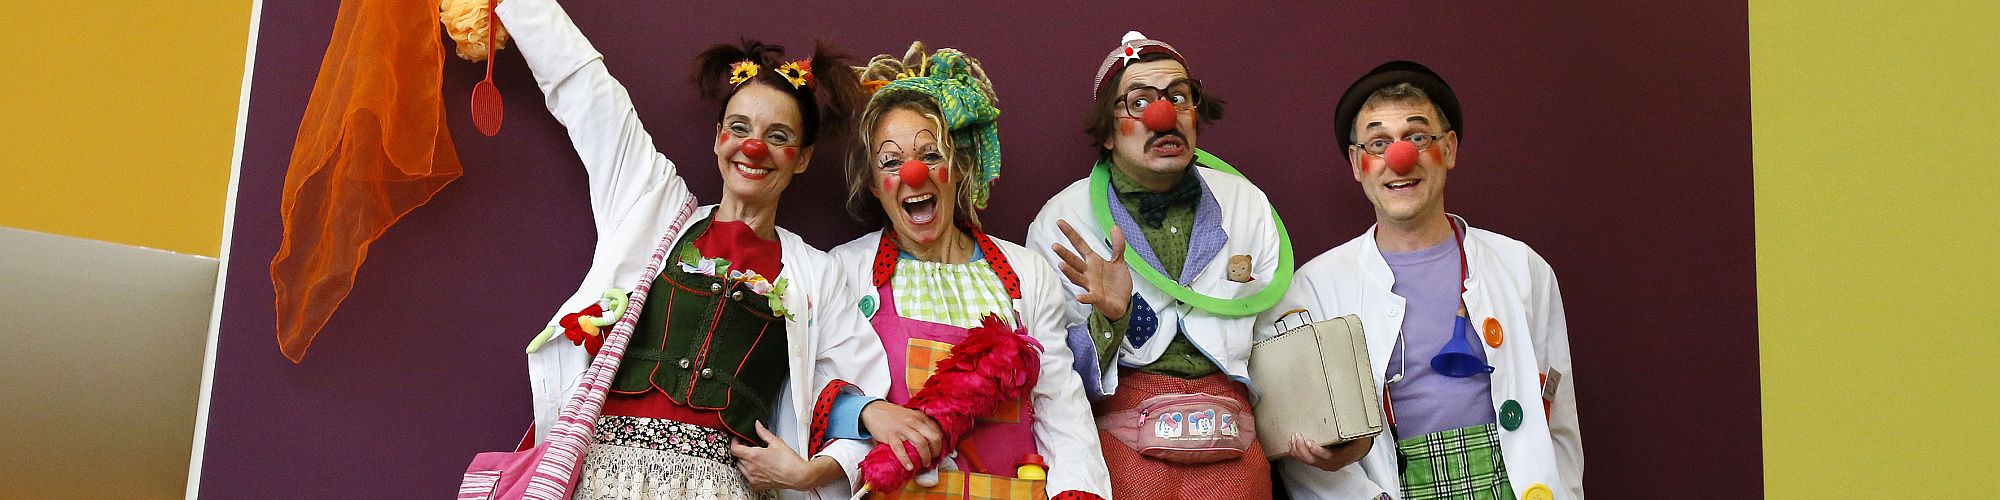 Vier KlinikClowns im Aufzug